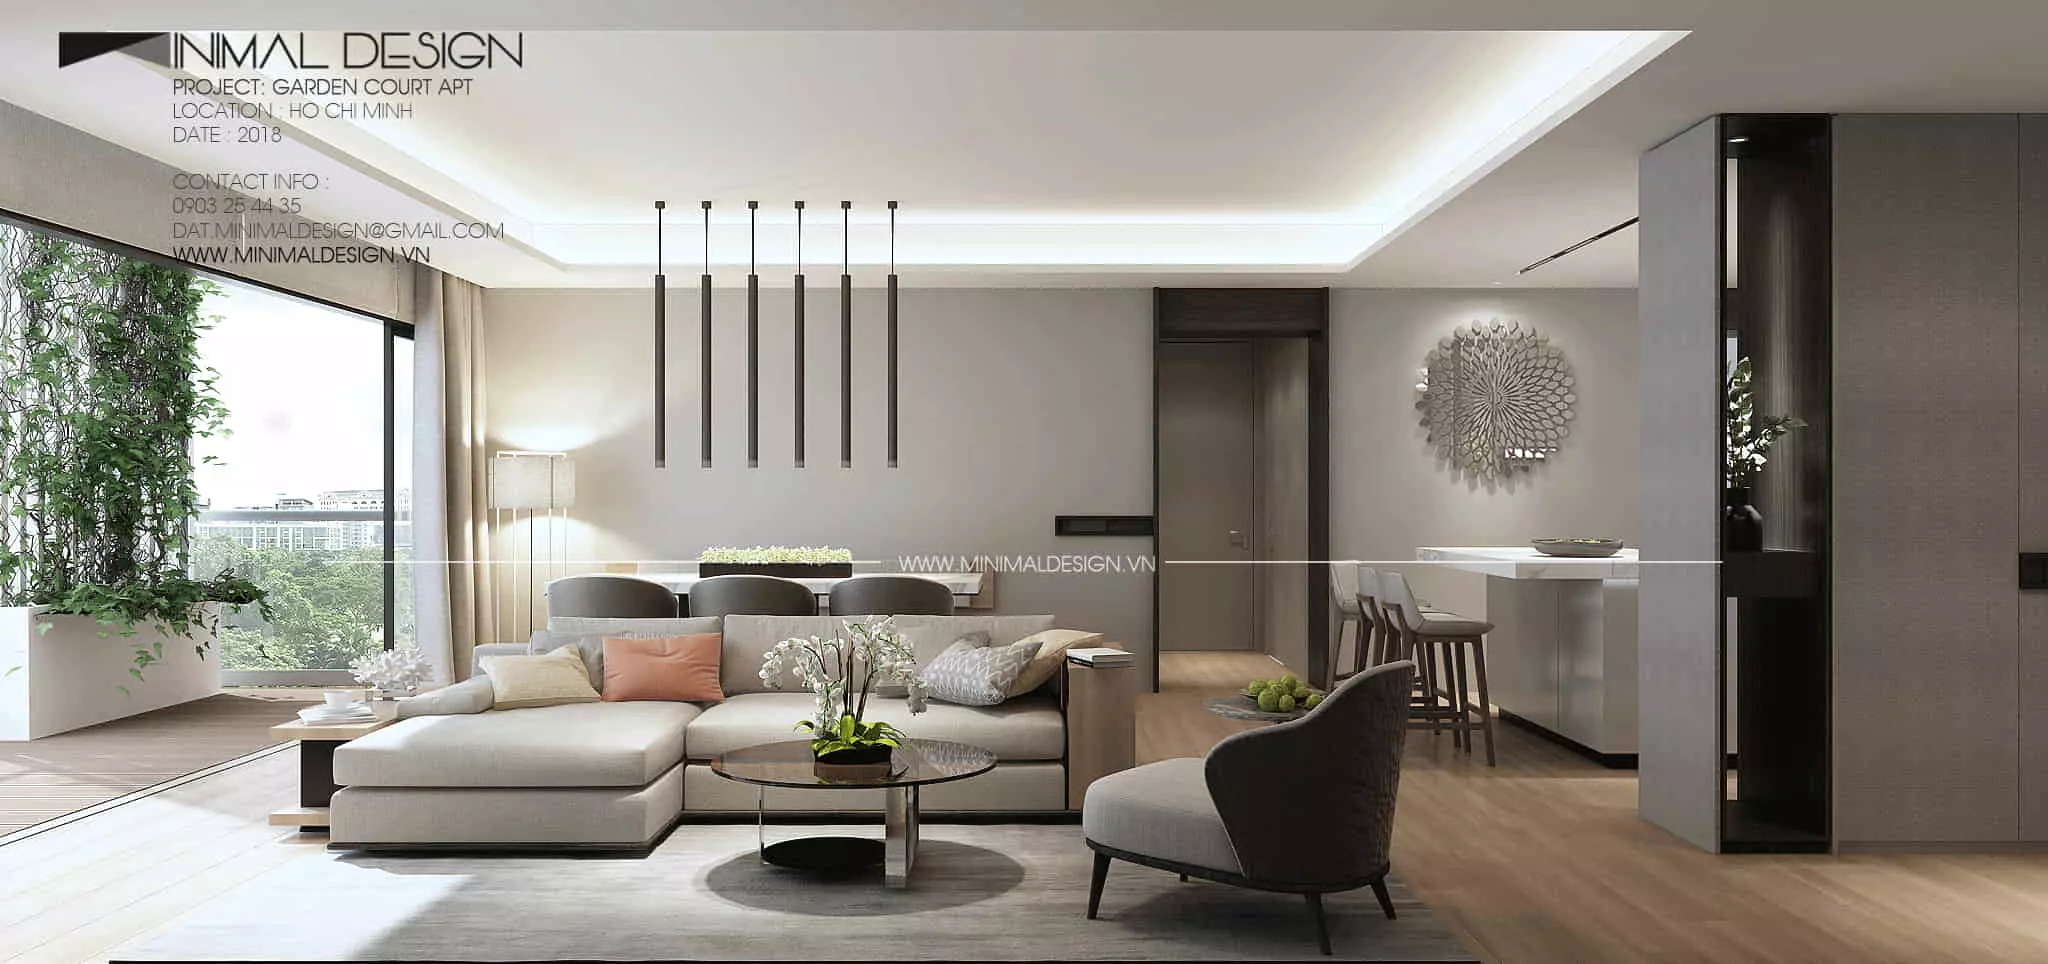 Với những cách sắp xếp không gian phòng khách cho căn hộ nhỏ dưới đây sẽ giúp bạn có giải pháp hiệu quả cho căn hộ của mình.